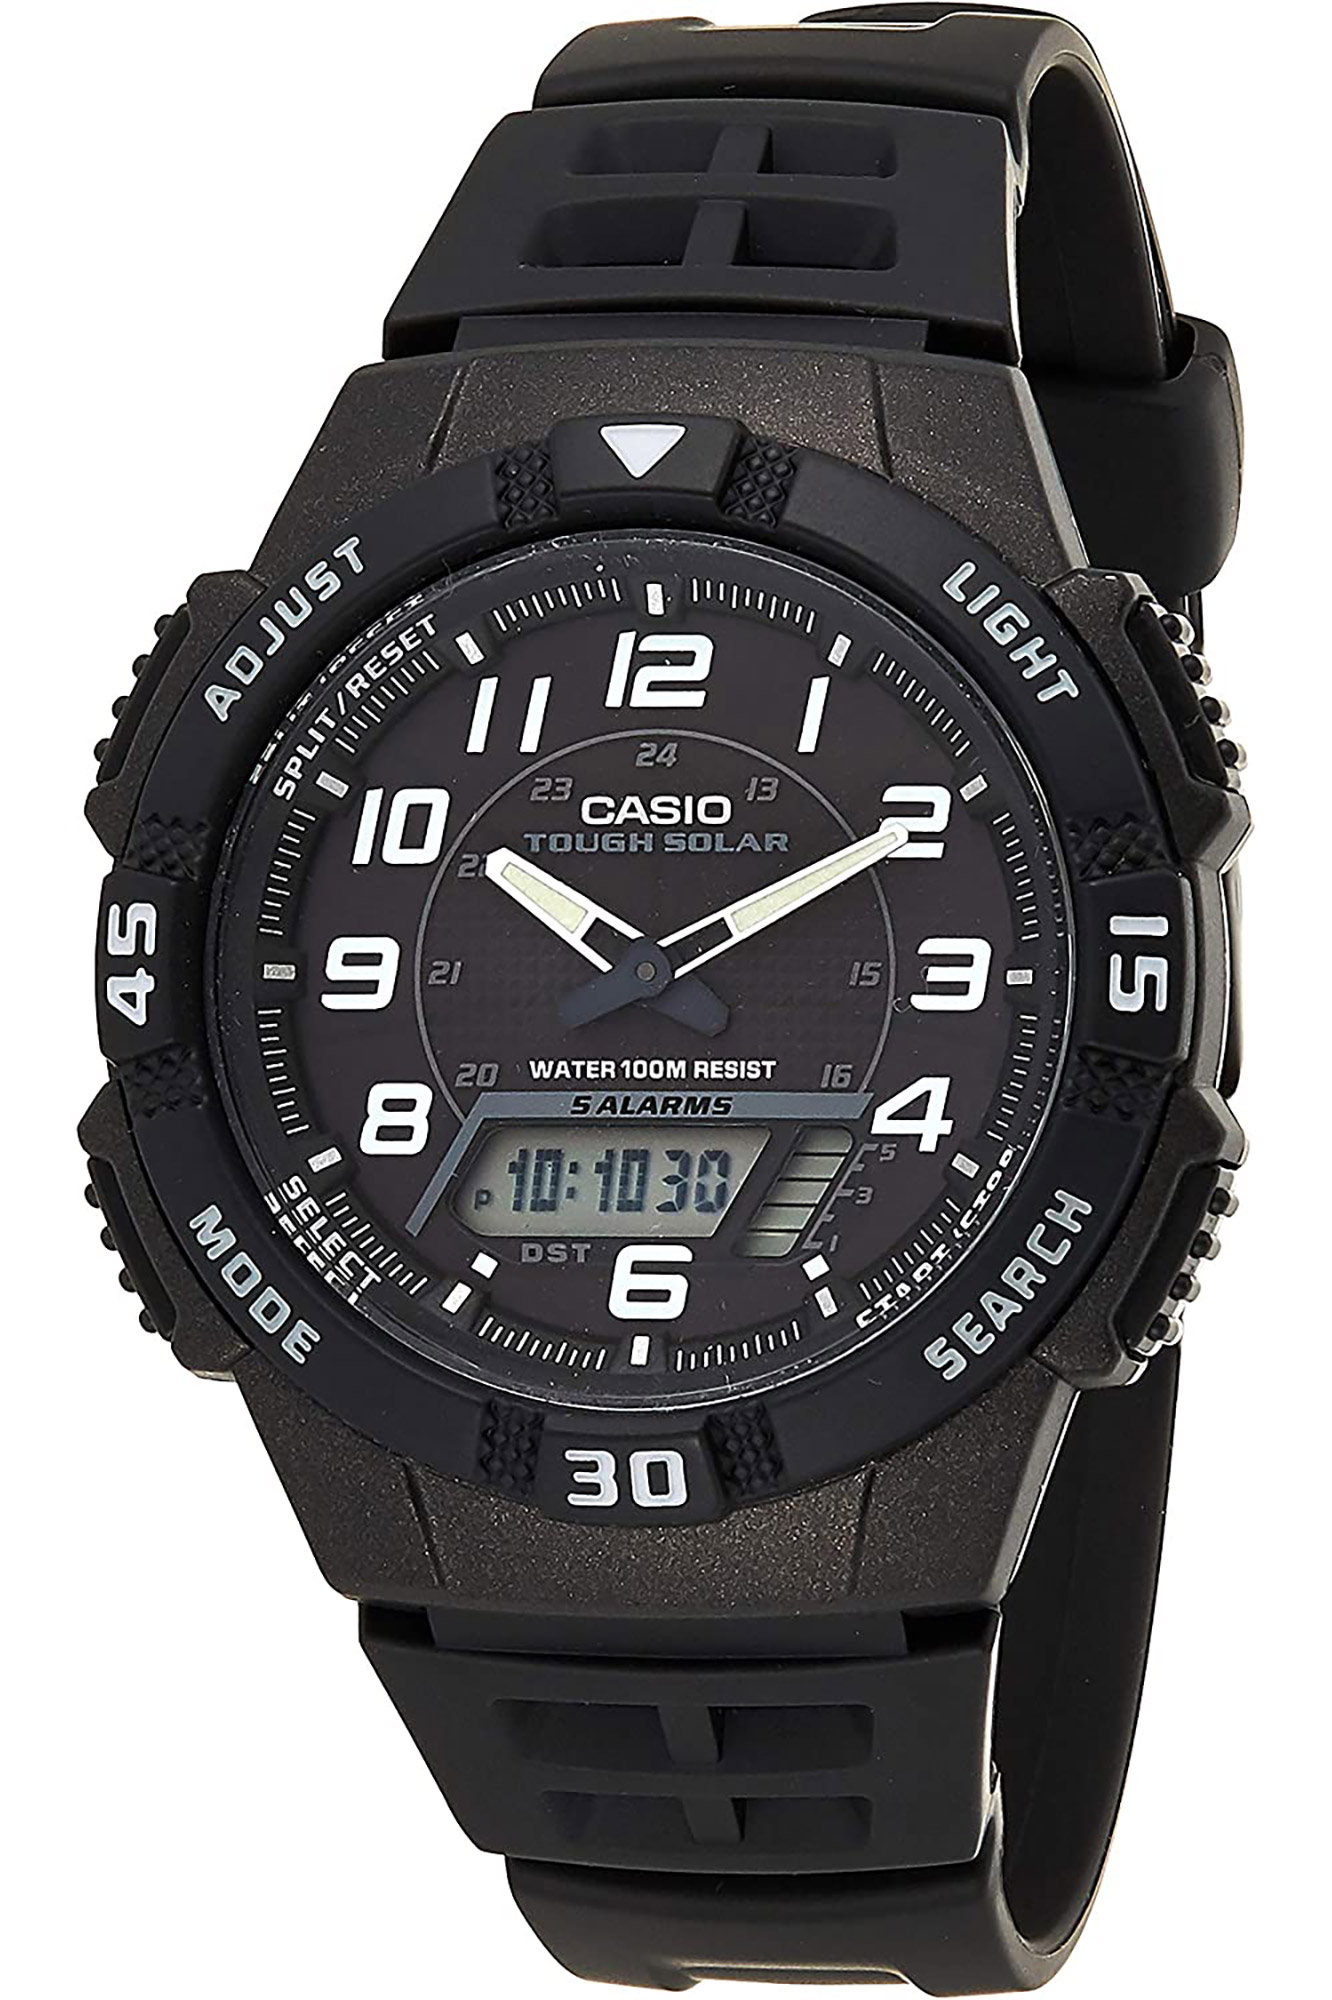 Watch CASIO Collection aq-s800w-1bvef